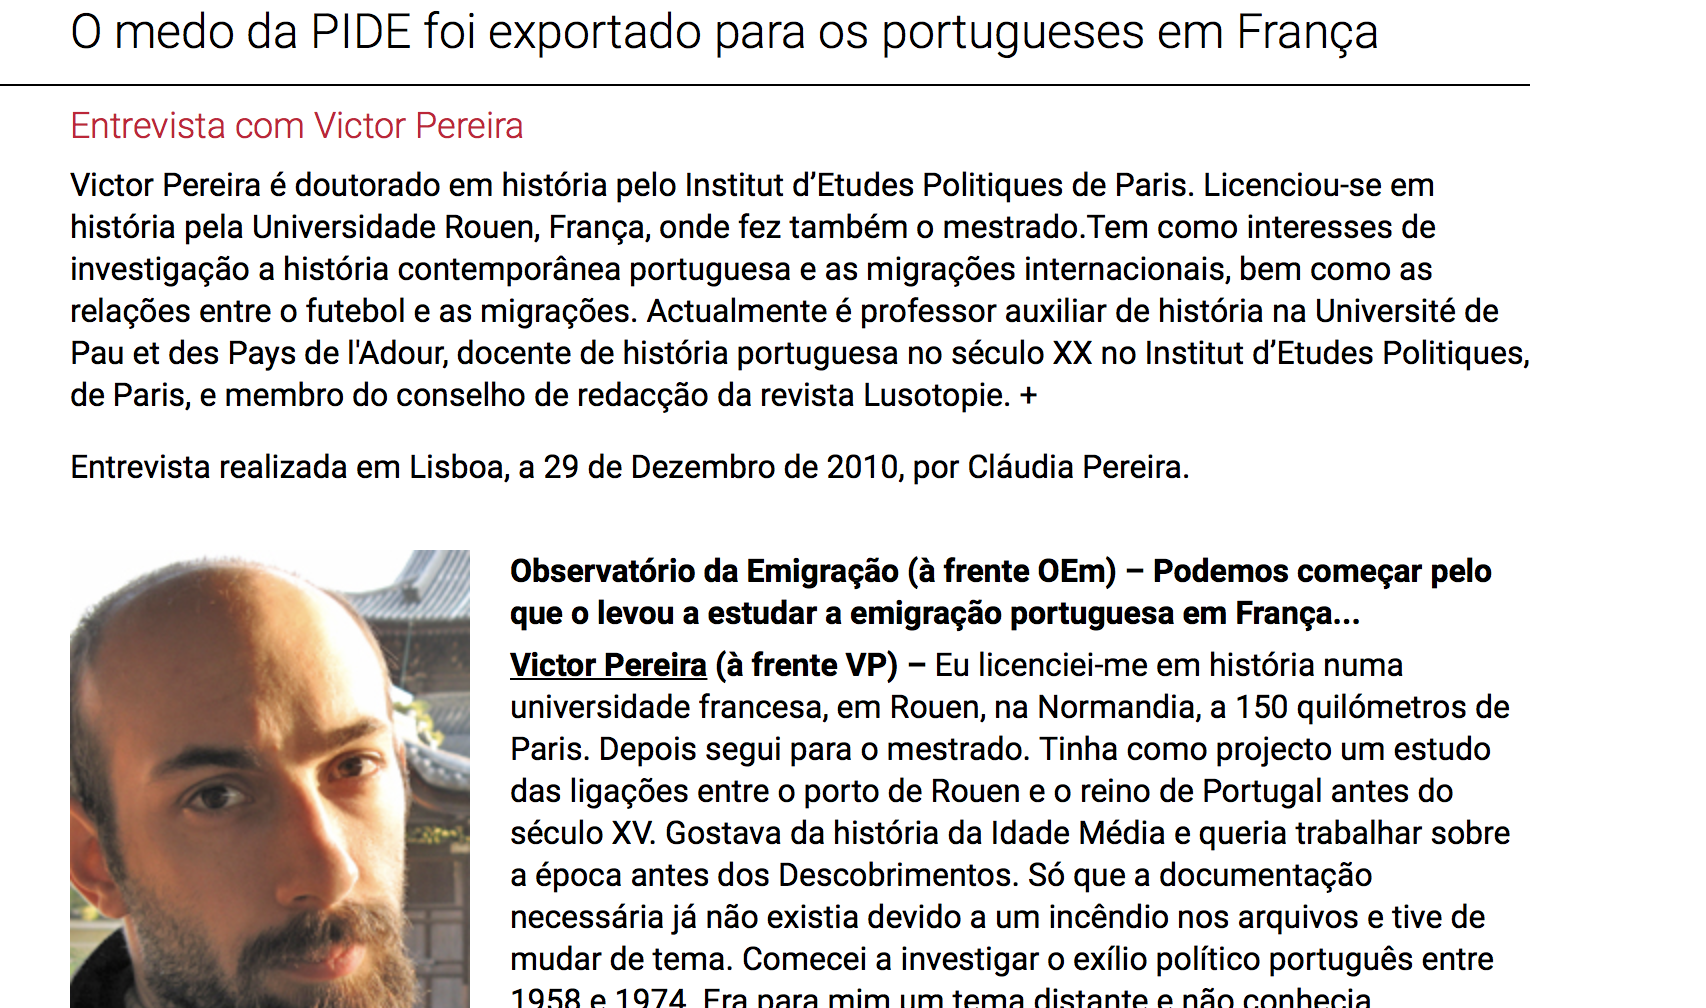 "O medo da PIDE foi exportado para os portugueses em França"